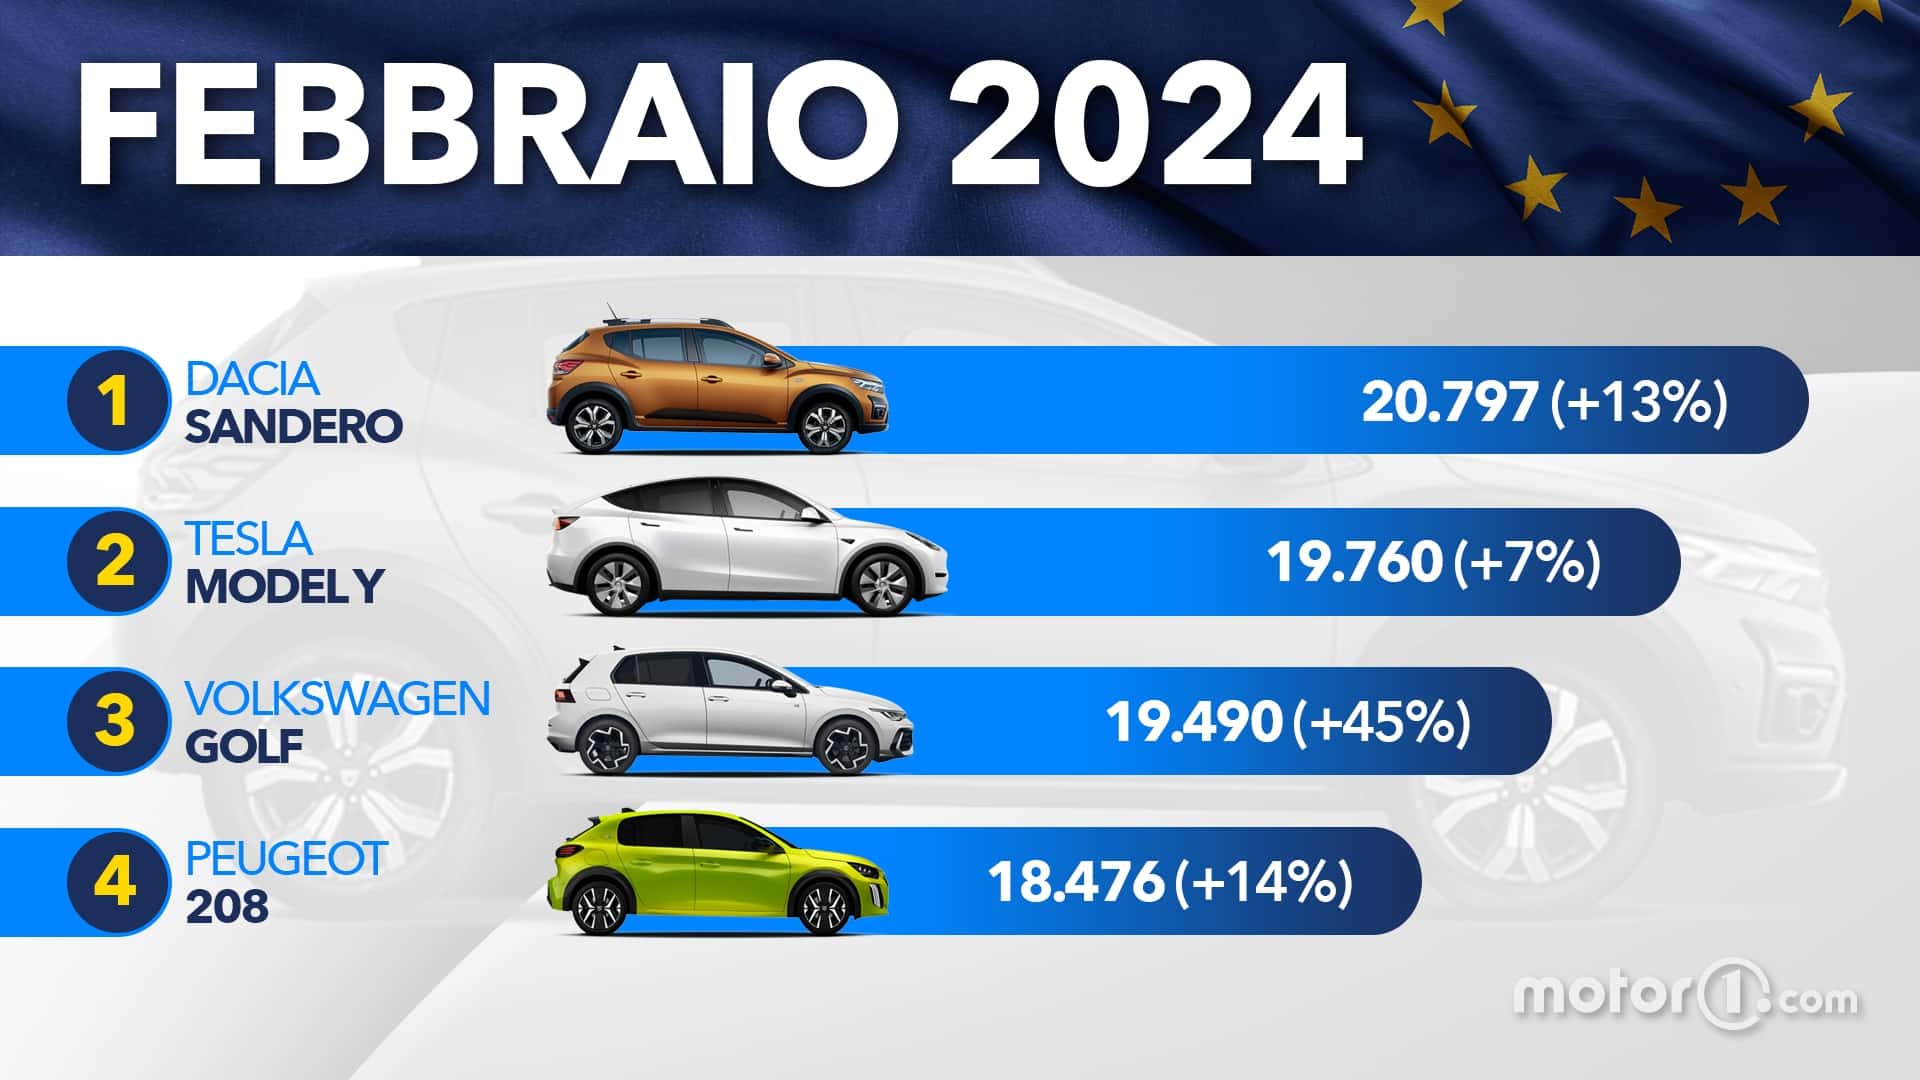 le auto più vendute in europa a febbraio 2024: la classifica